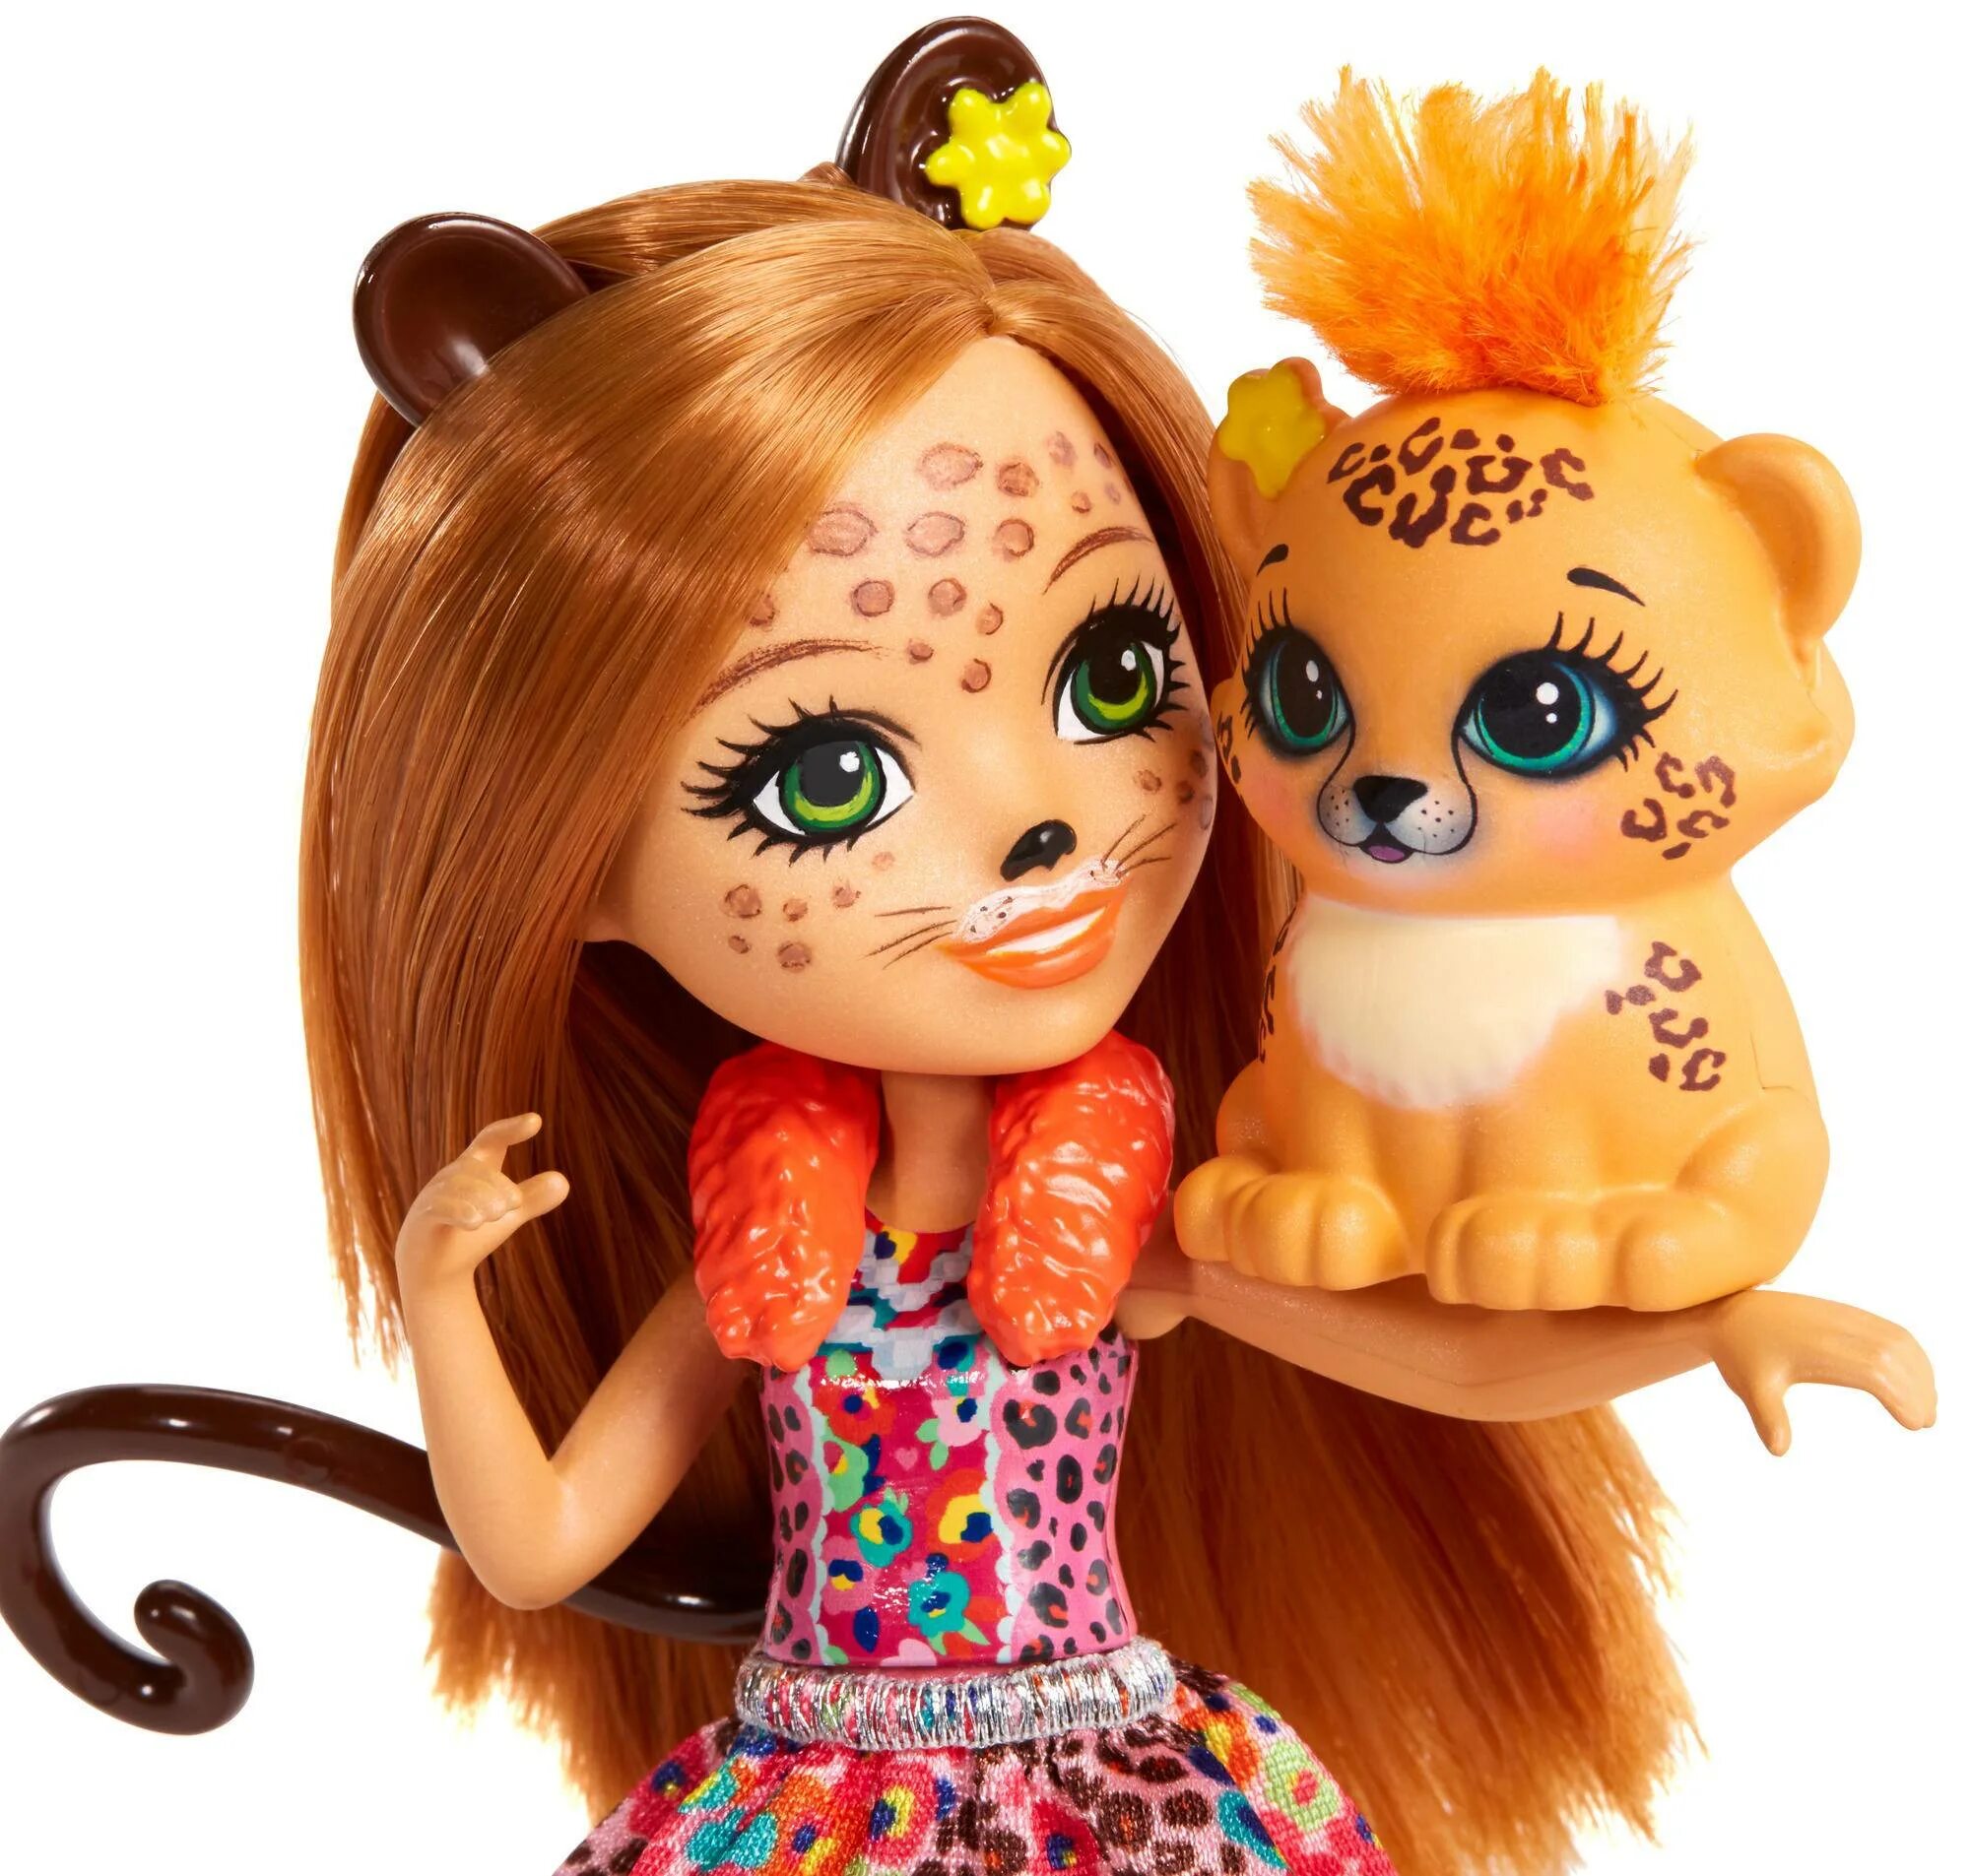 Энченчималс. Кукла Enchantimals гепард. Энчантималс куклы гепард. Кукла Enchantimals Чериш Гепарди. Энчантималс куклы леопард.